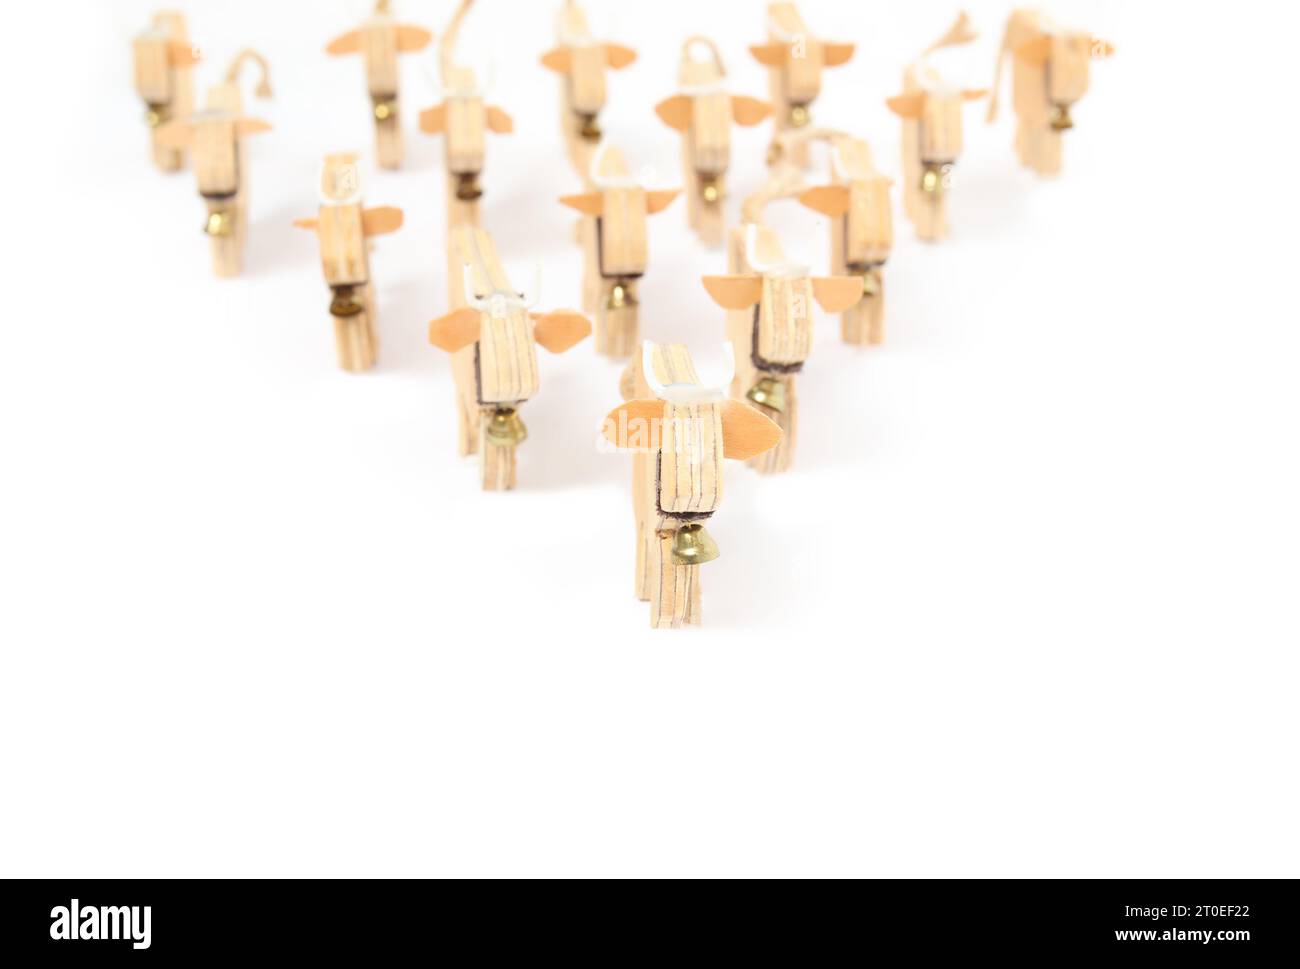 Holzkühe gehen zur Kamera. Konzept für Sieg, Führung, Zusammenstehen. Handgefertigte Kuhsilhouetten aus Holz mit Glocken in Pfeilform. Stockfoto